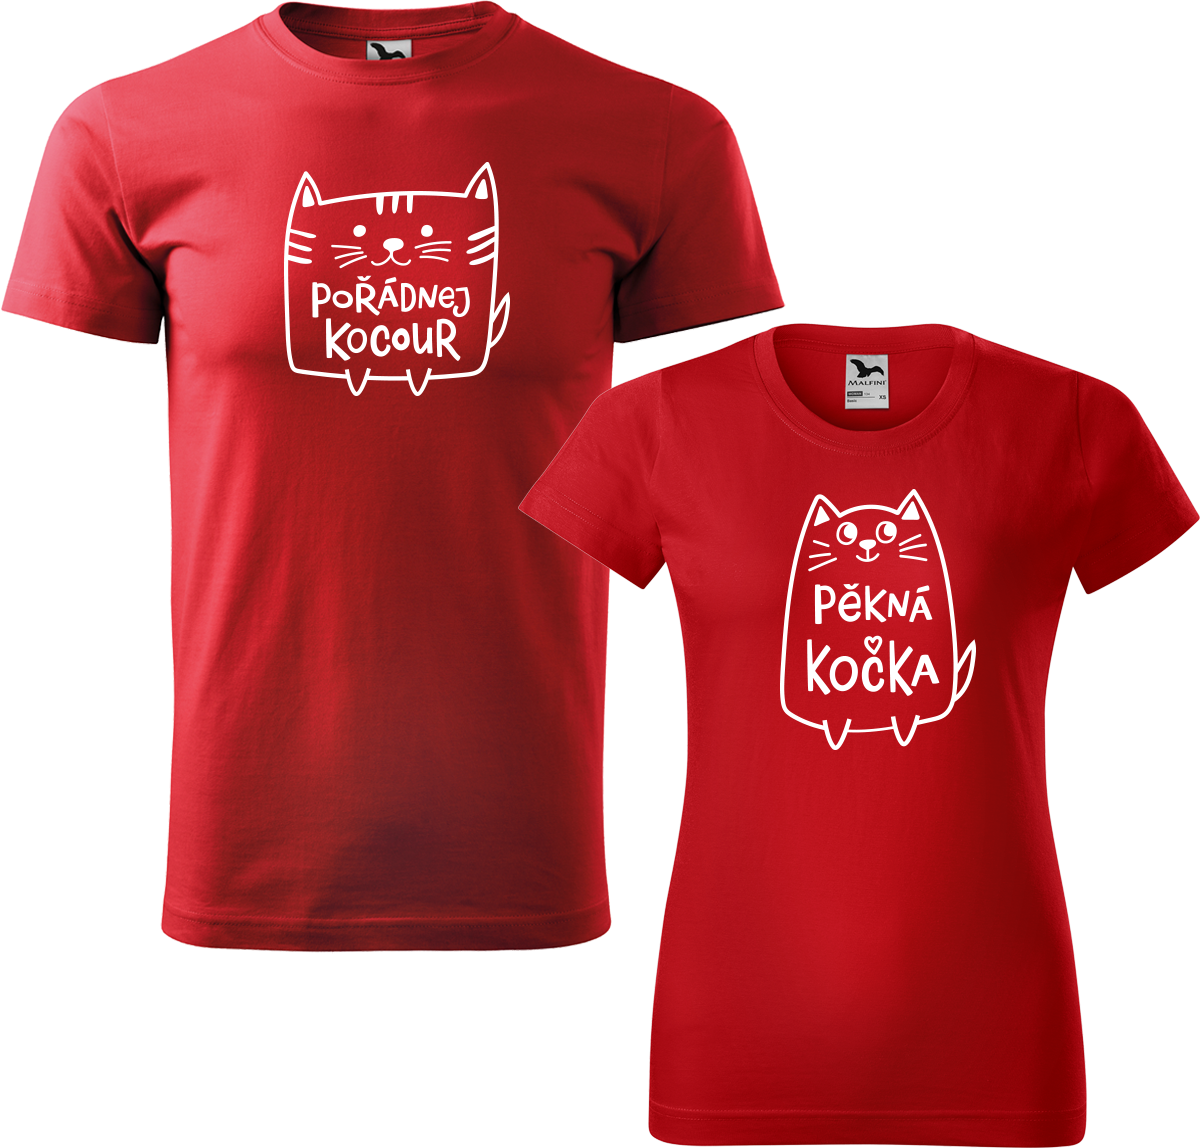 Trička pro páry - Pořádnej kocour a pěkná kočka Barva: Červená (07), Velikost dámské tričko: L, Velikost pánské tričko: L